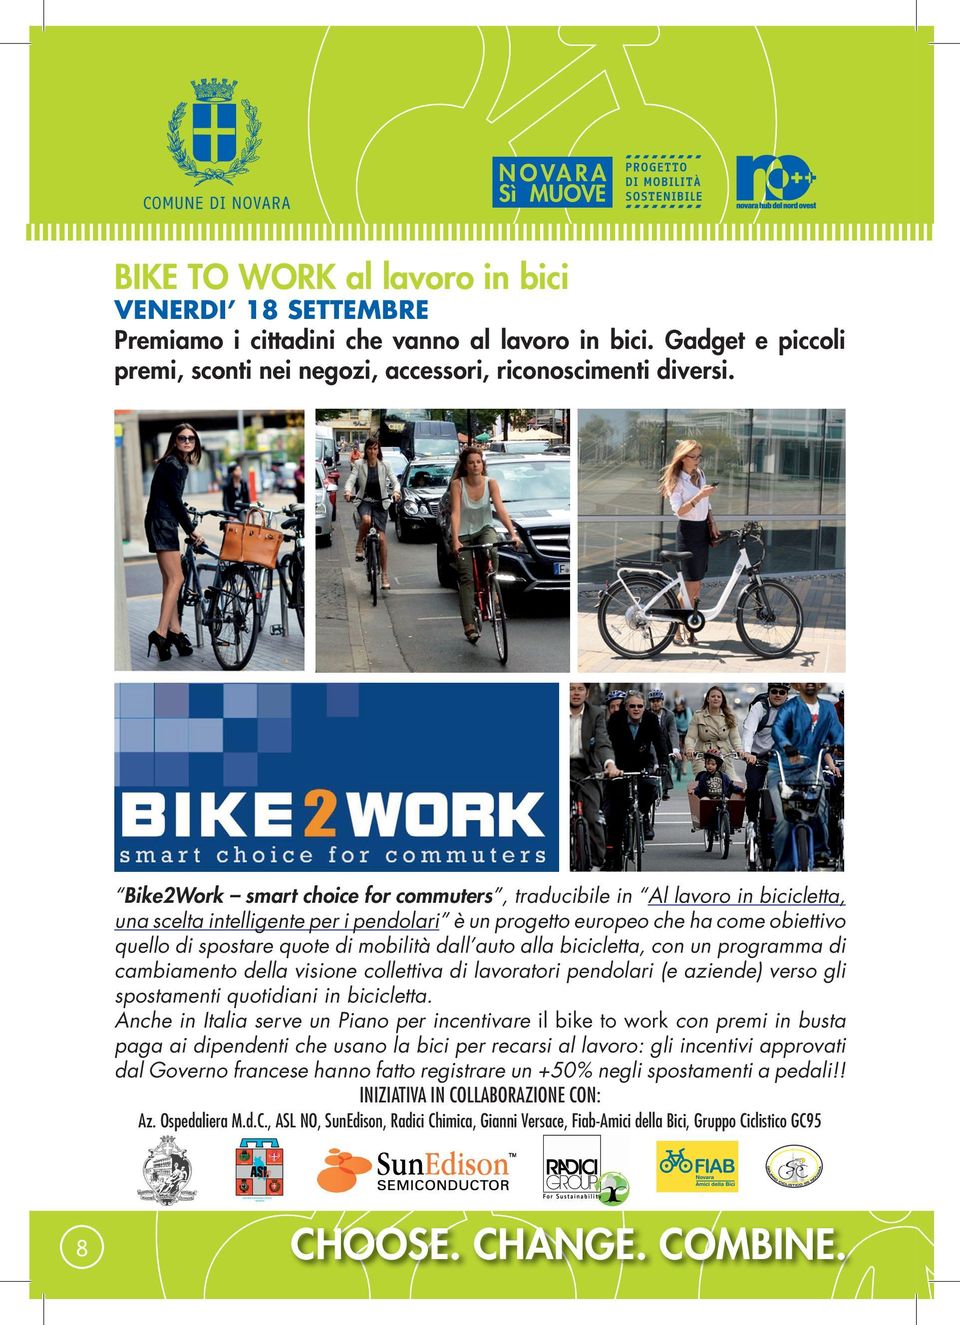 dall auto alla bicicletta, con un programma di cambiamento della visione collettiva di lavoratori pendolari (e aziende) verso gli spostamenti quotidiani in bicicletta.